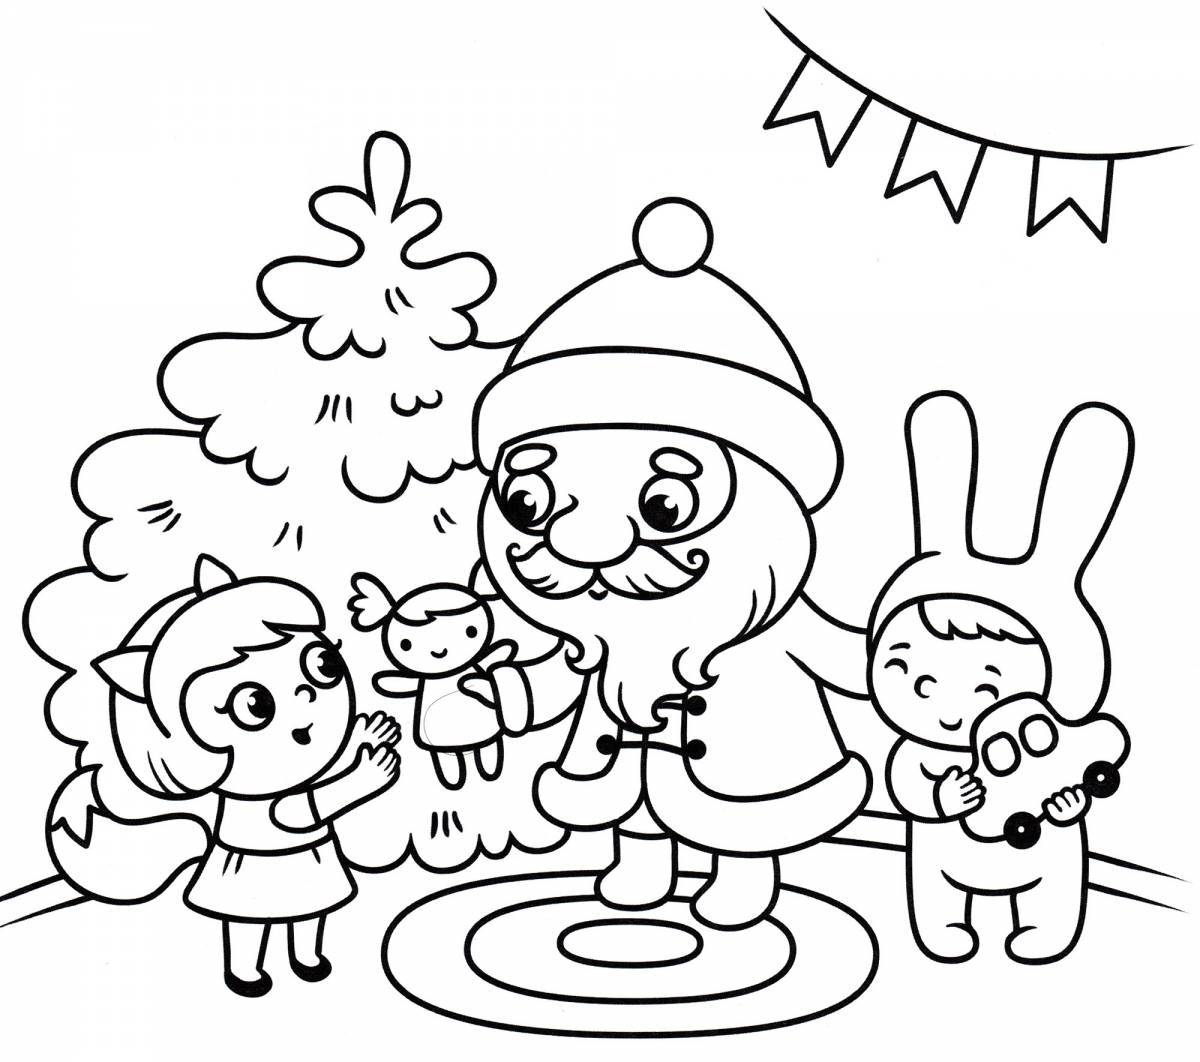 Coloring page holiday santa claus